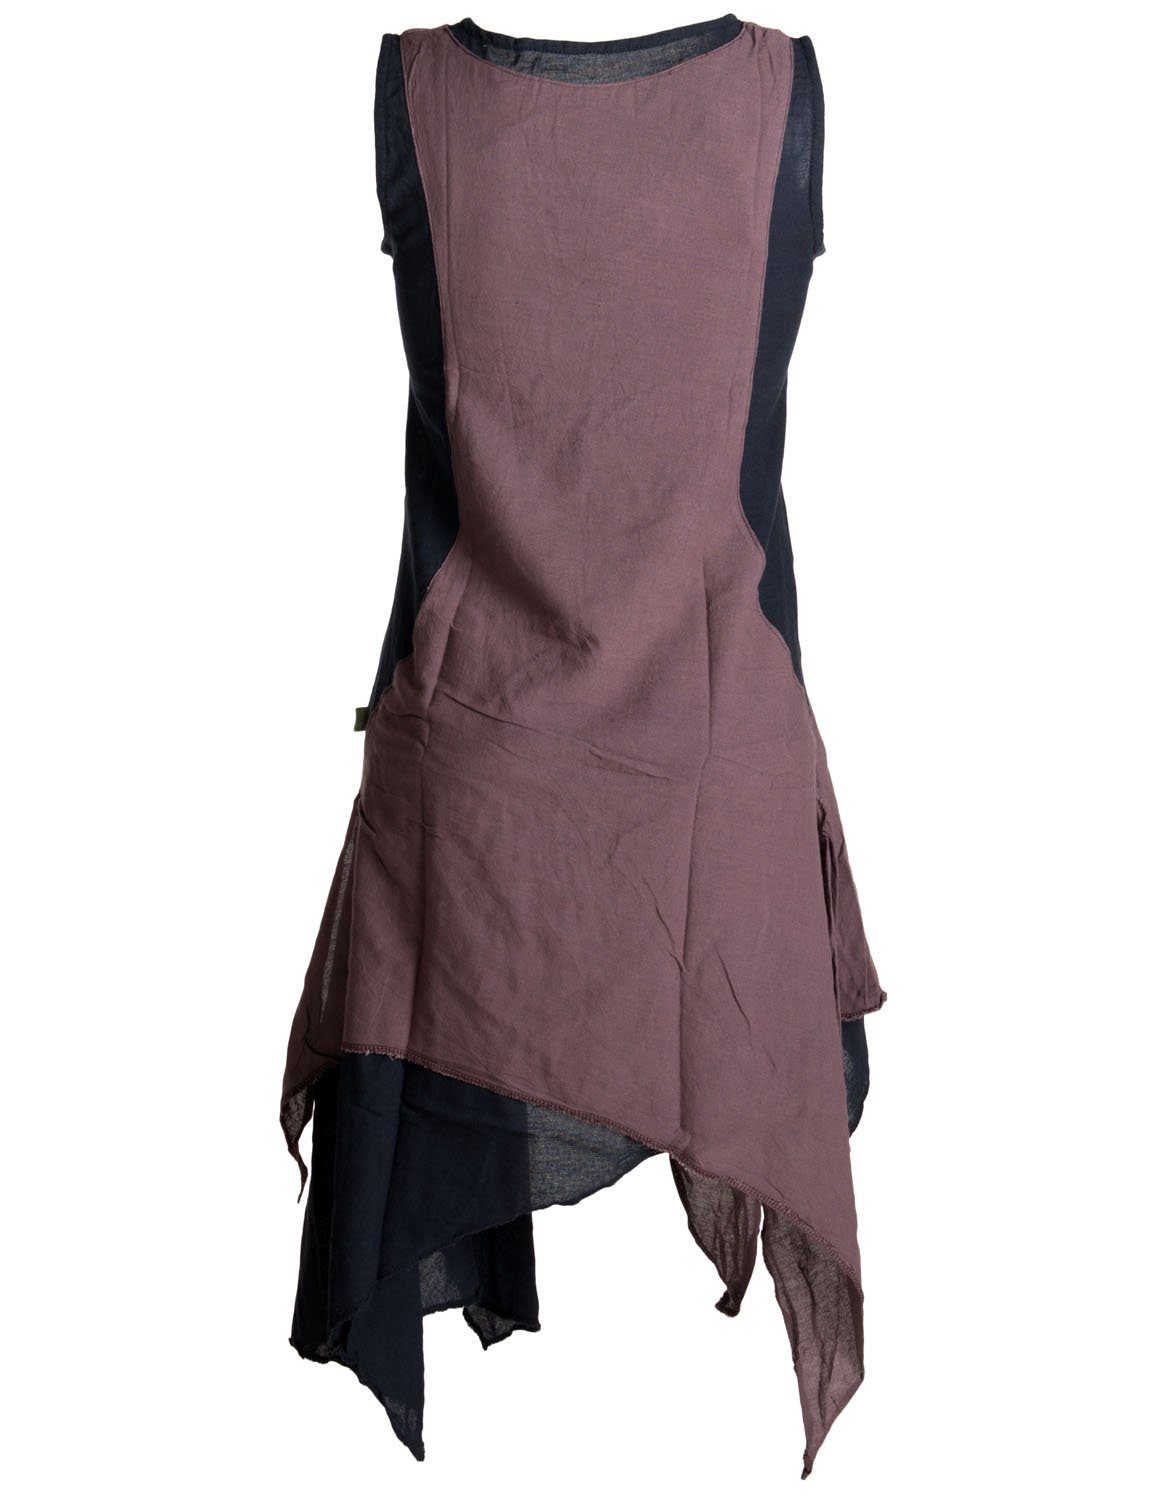 Vishes Sommerkleid Ärmelloses Lagenlook Kleid Baumwolle Boho, Style Goa, schwarz-braun Hippie handgewebte